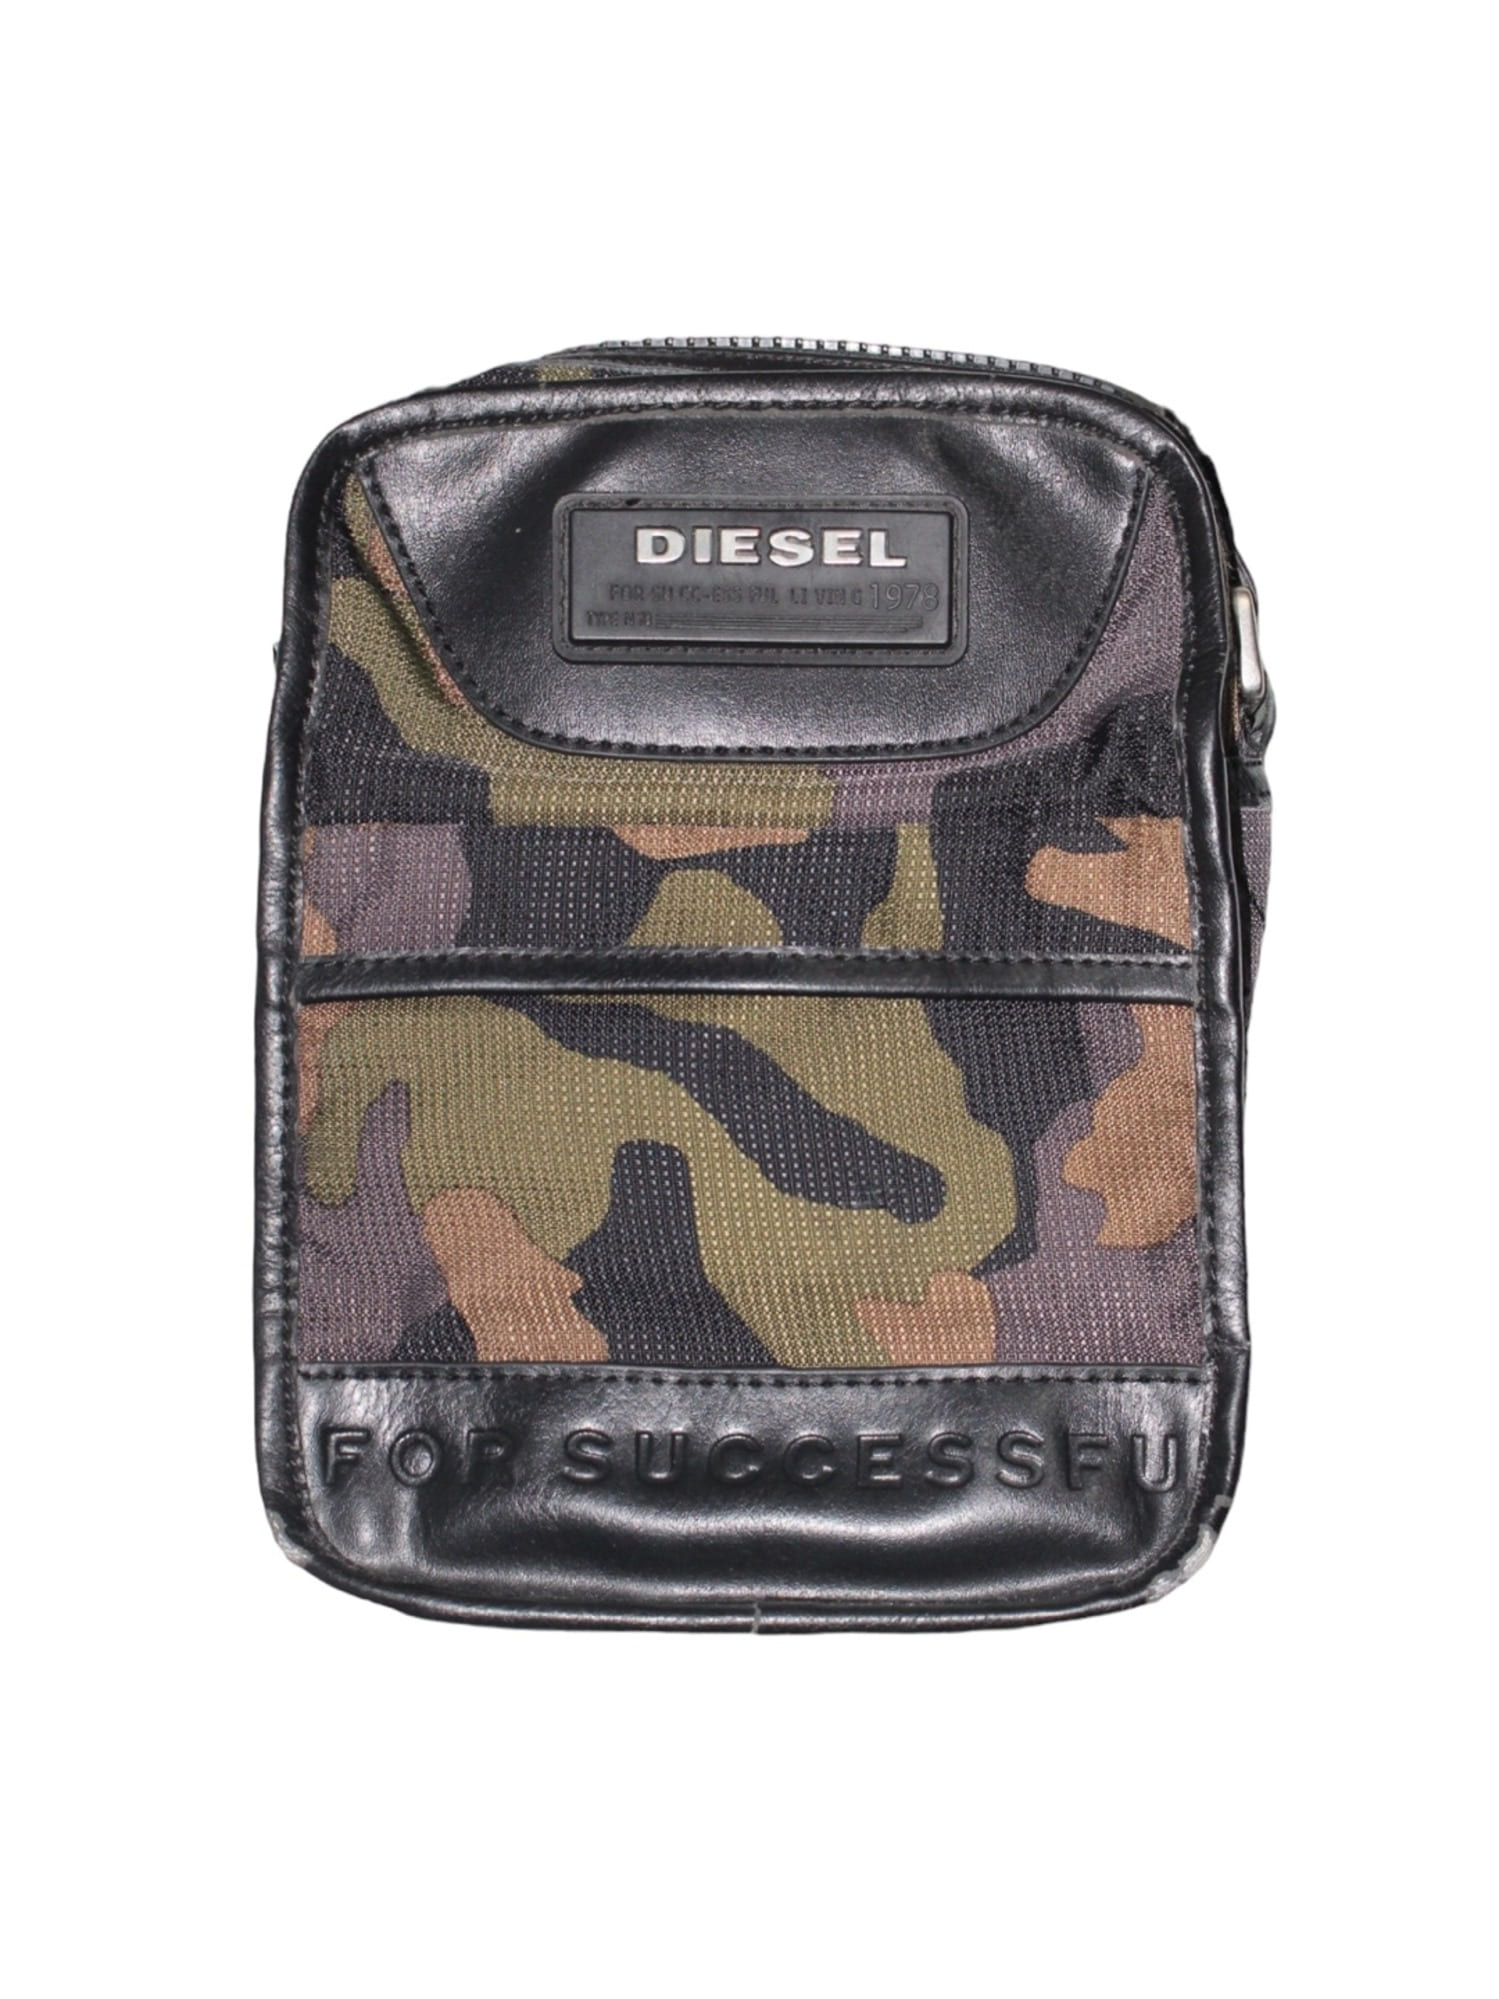 DIESEL Camourflage Pattern Cross Bag